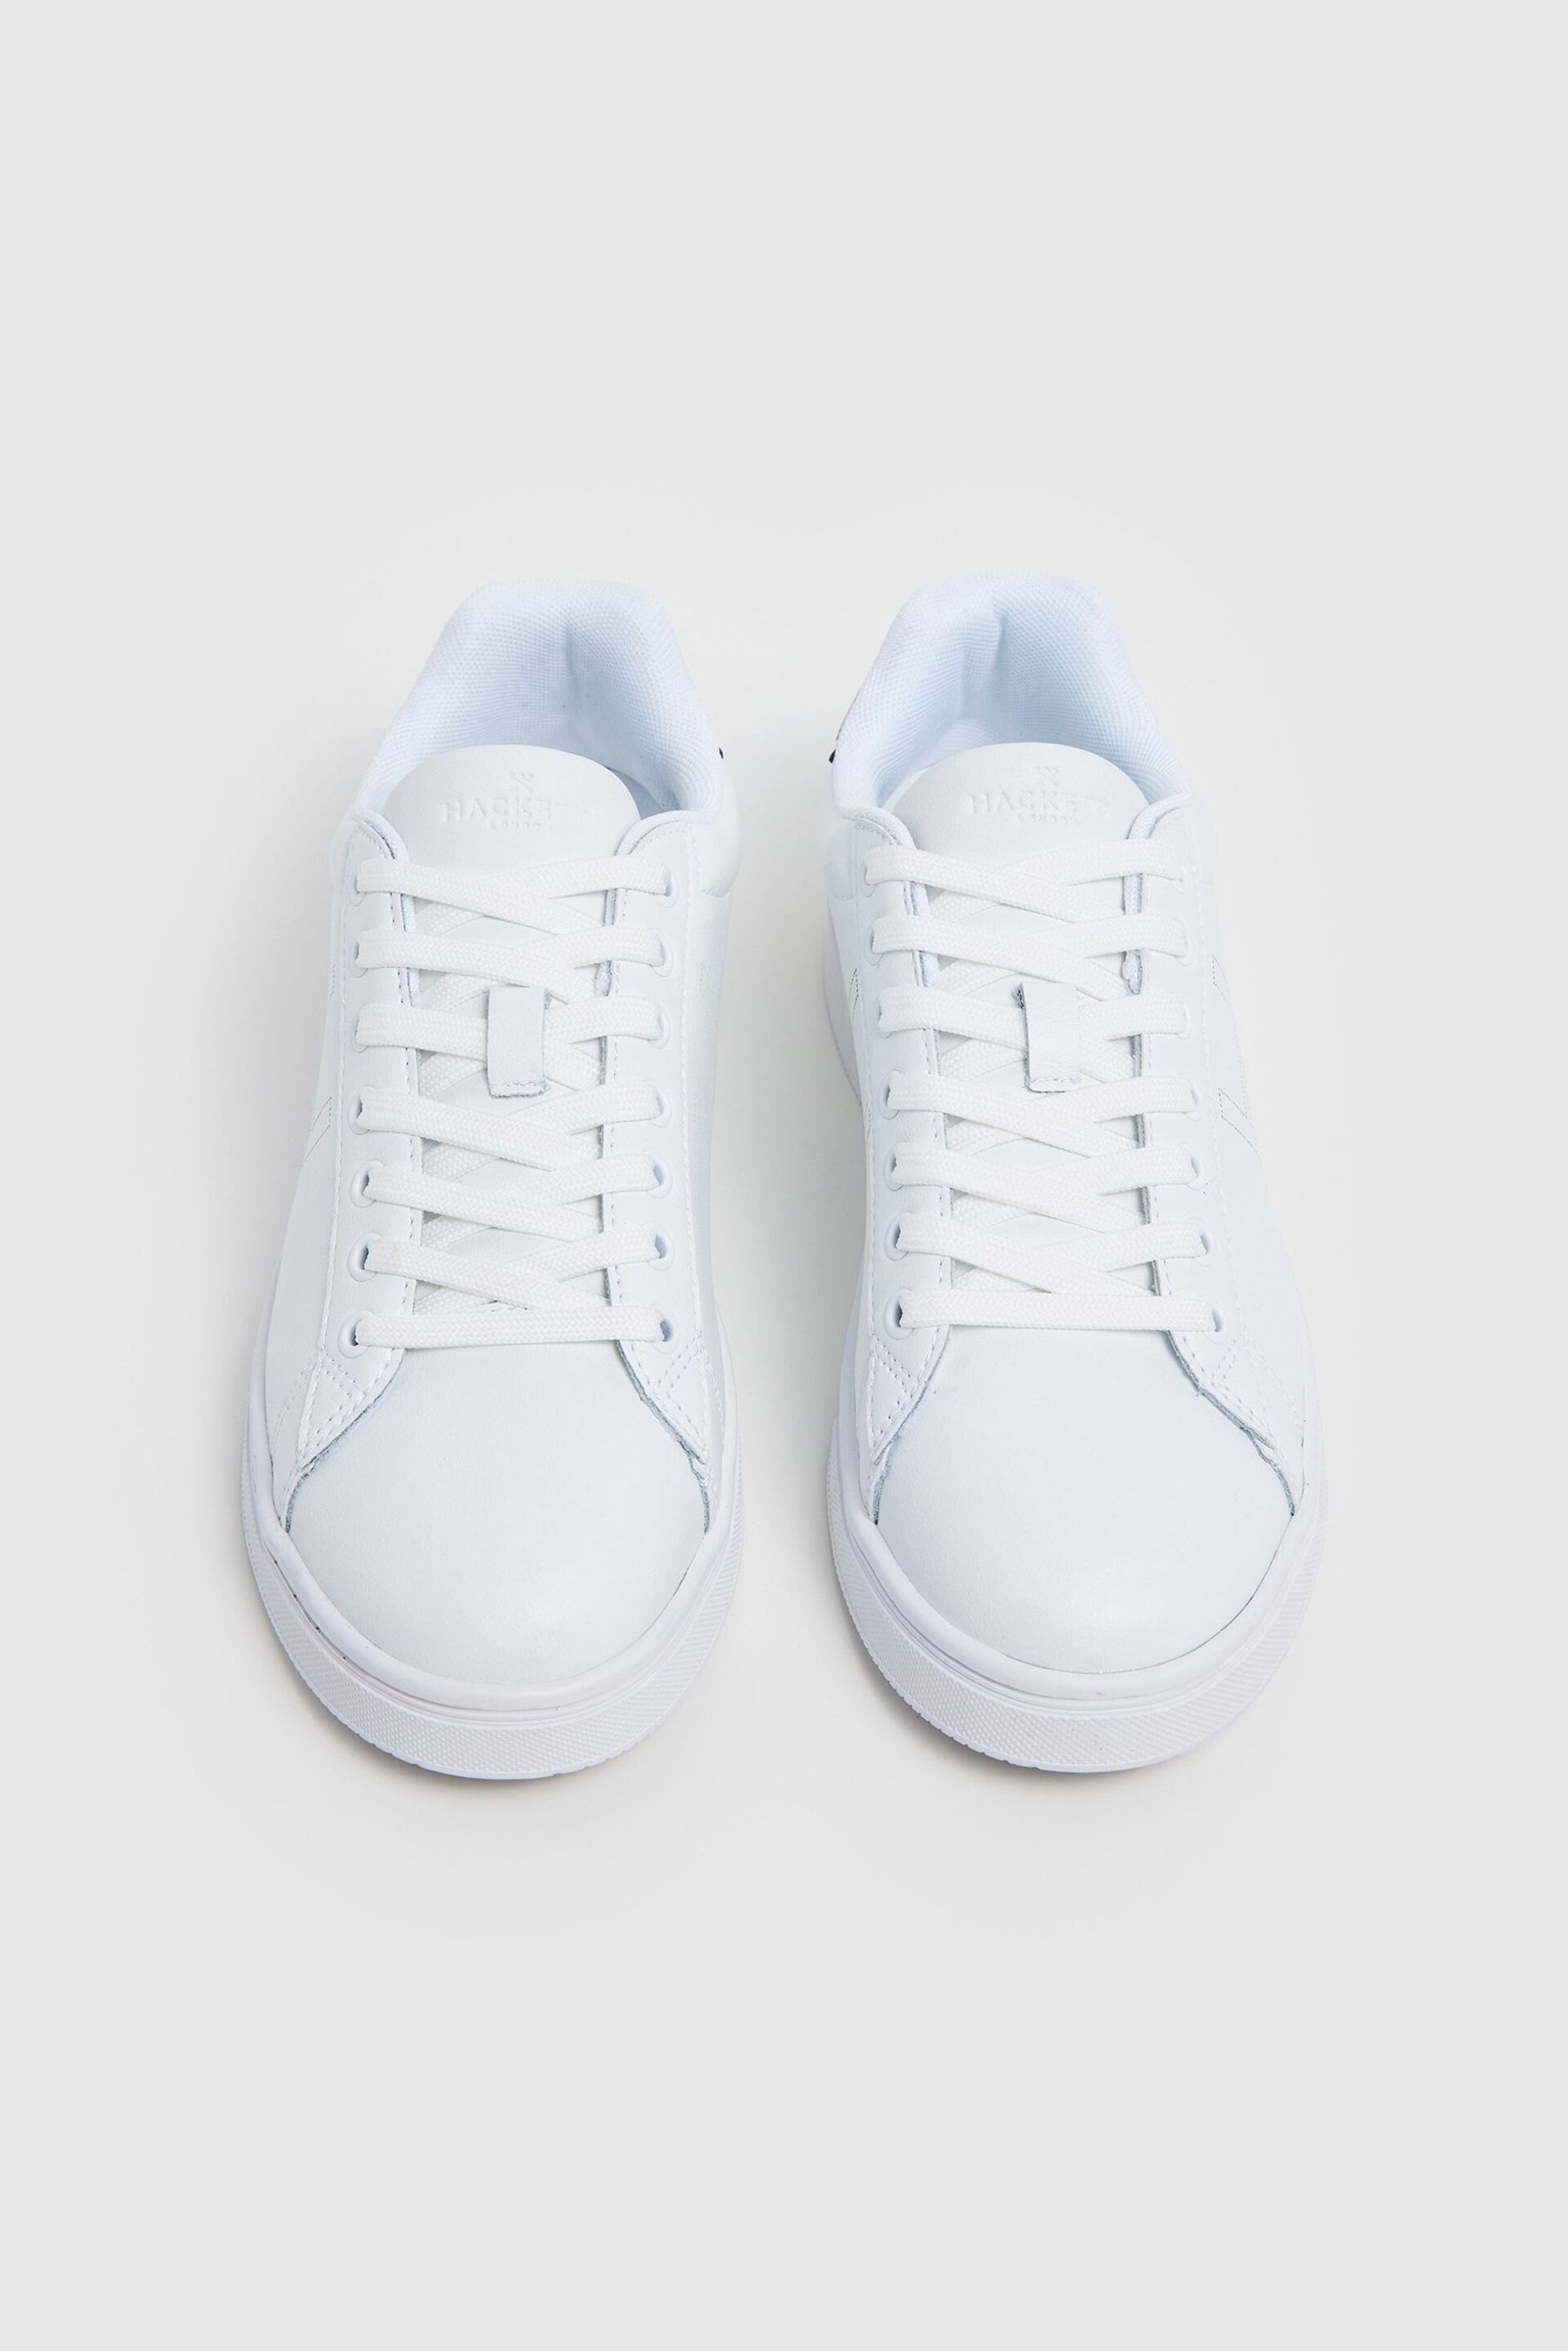 Hackett London Men Sportive White Sneakers - Image 4 of 5